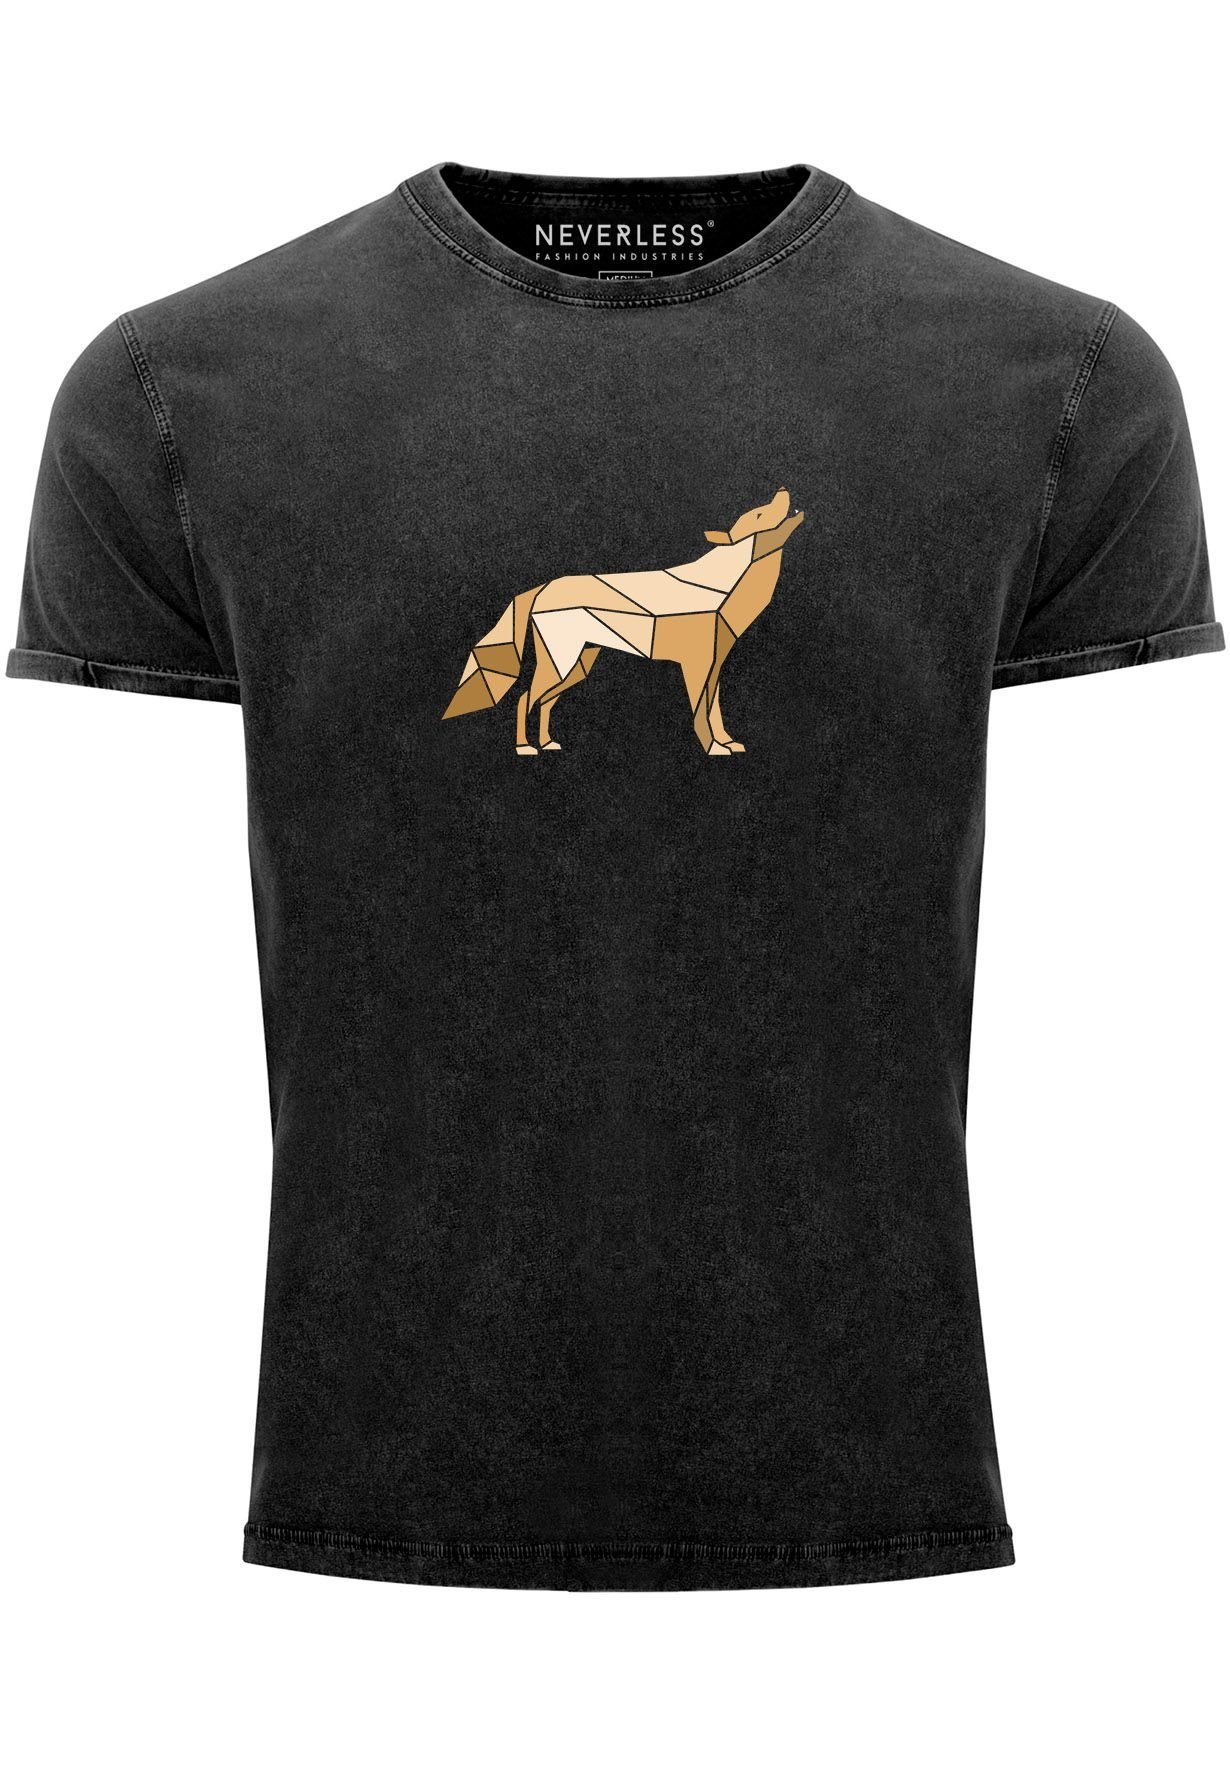 Neverless Print-Shirt Herren Vintage Shirt Aufdruck Wolf Polygon Print Geometrie Outdoor Wil mit Print schwarz